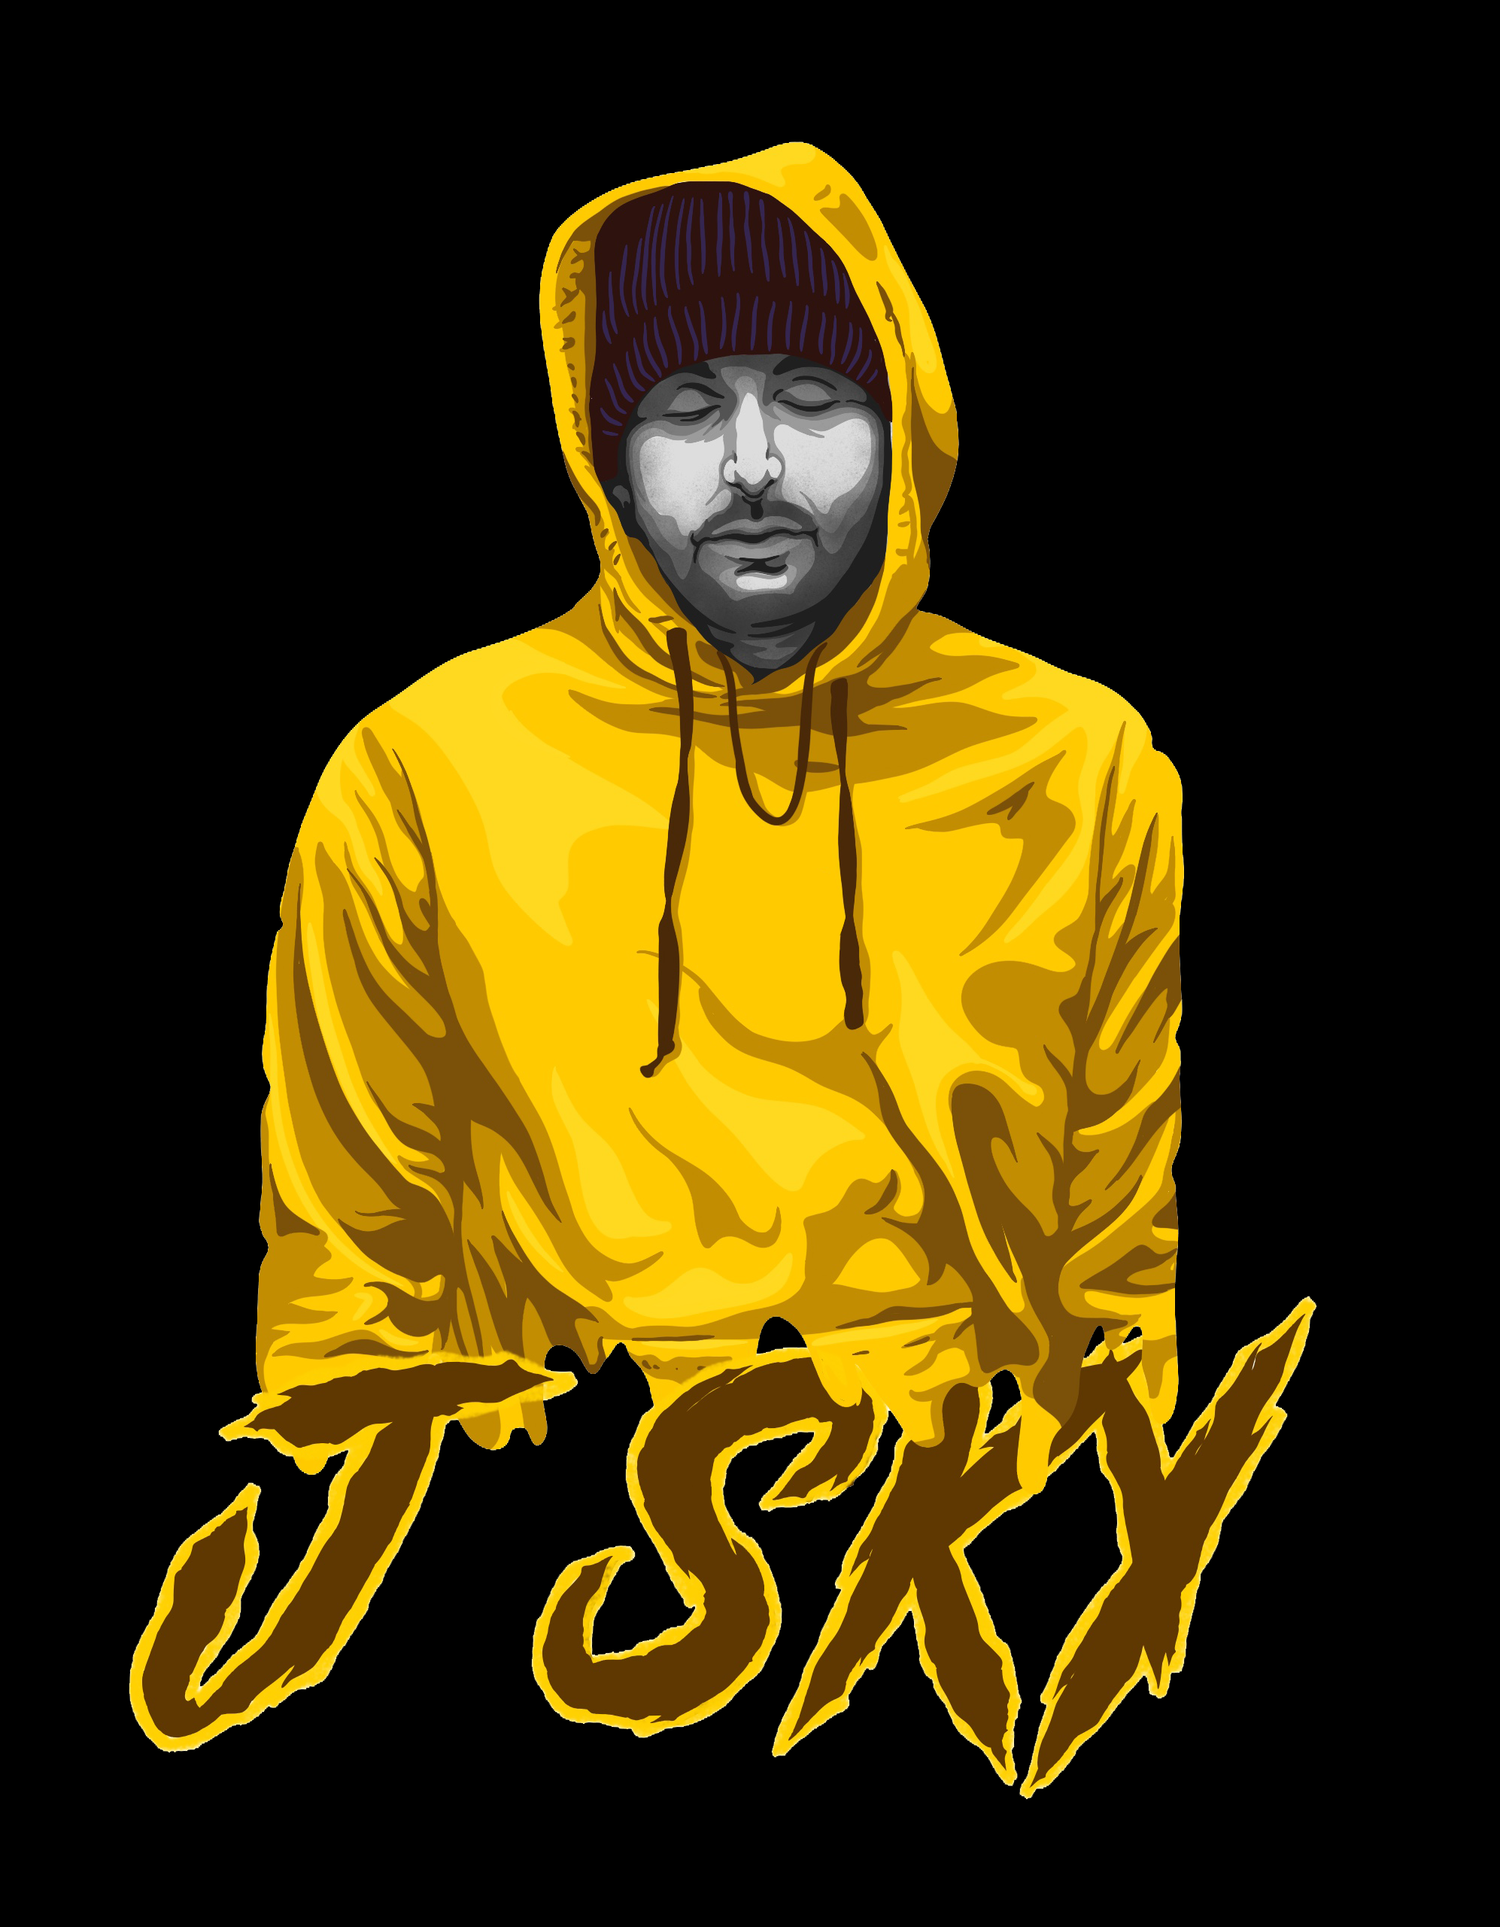 J Sky